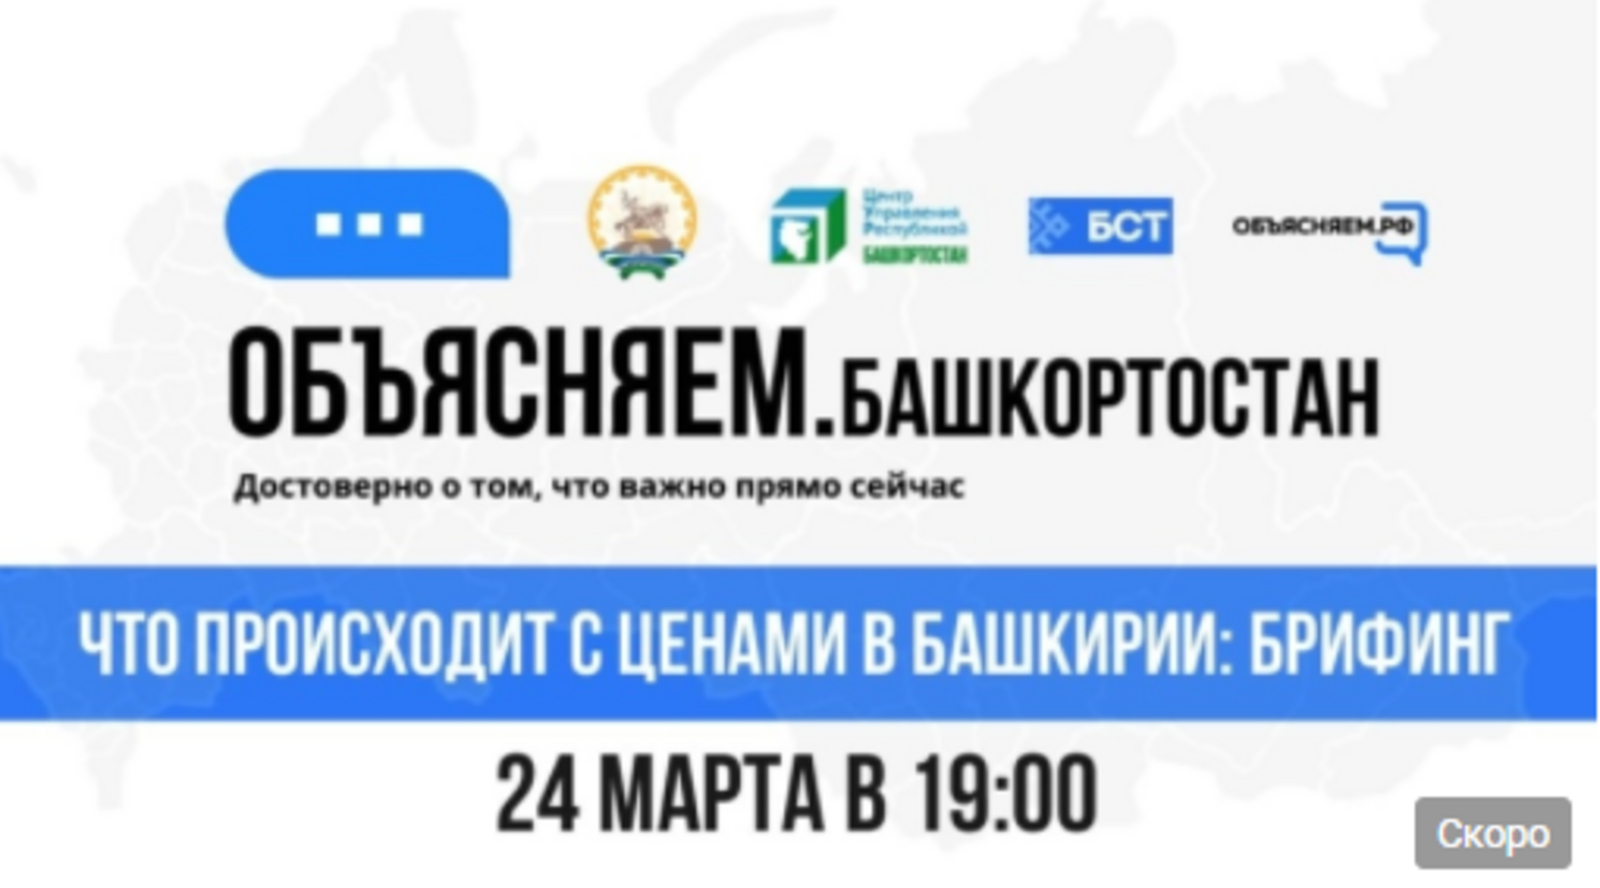 В Башкирии состоится специальный брифинг в рамках проекта «Объясняем.Башкортостан»